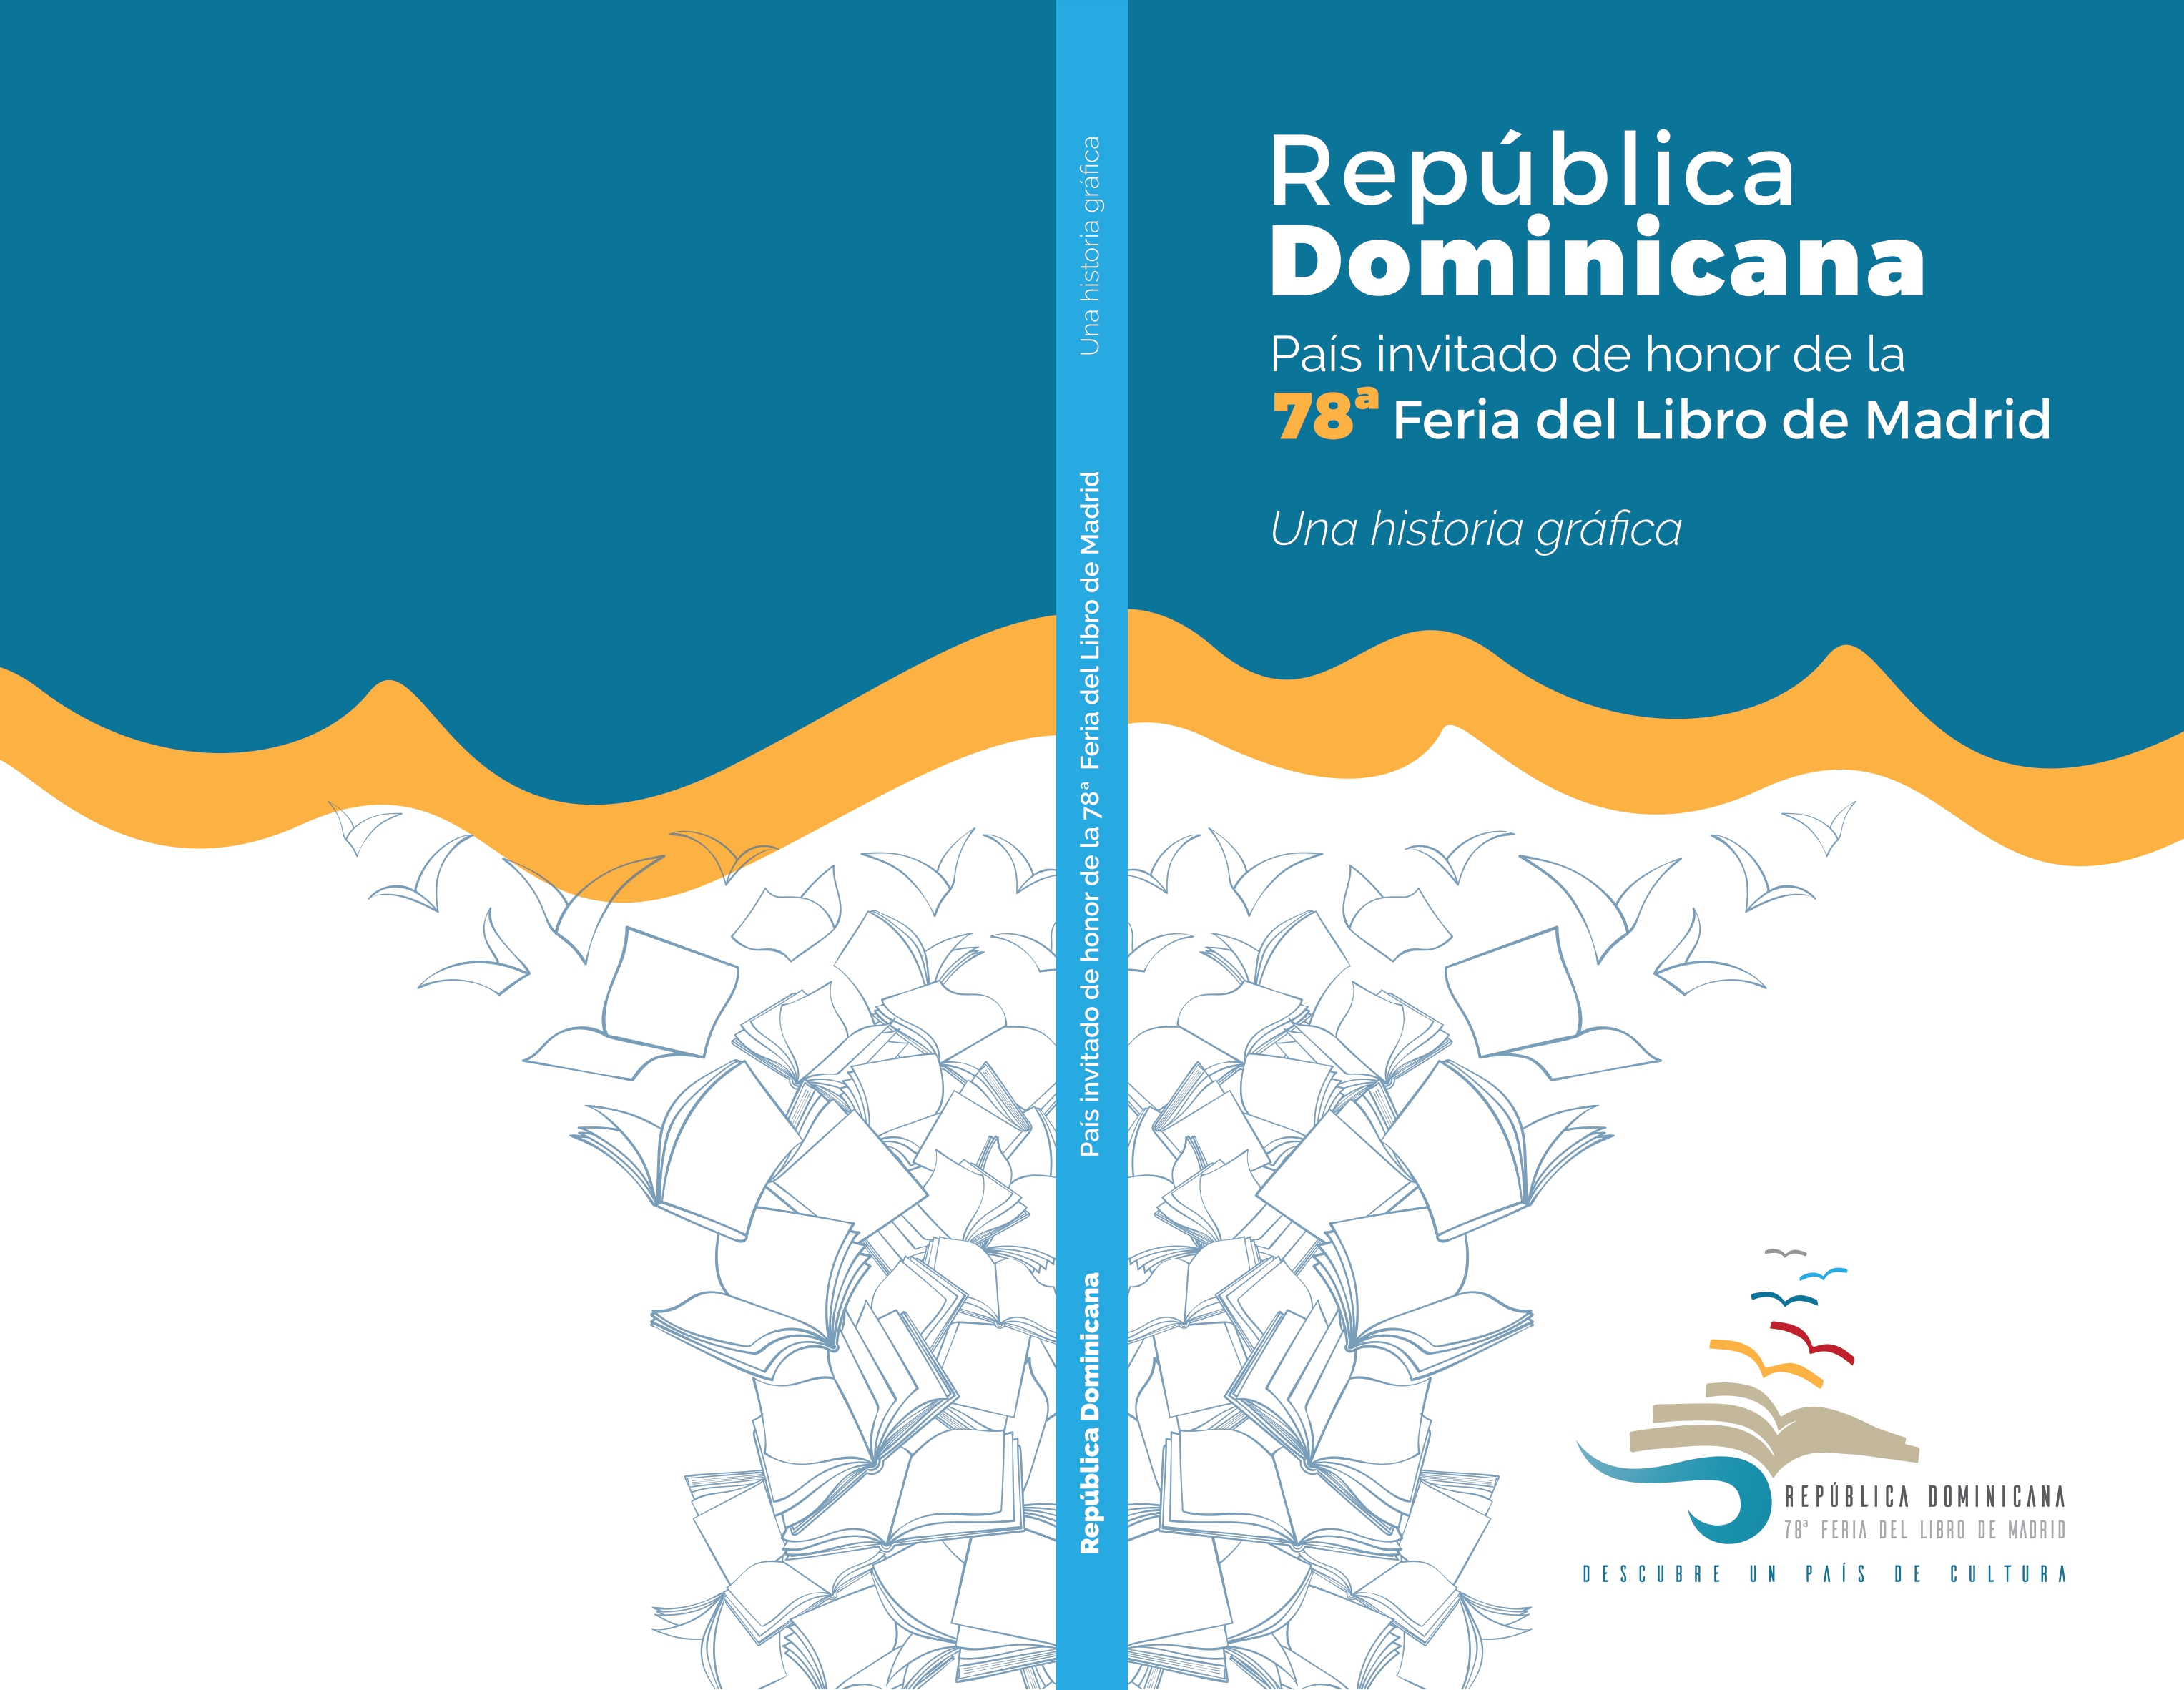 República Dominicana, invitado de honor de la 78 Feria del Libro de Madrid